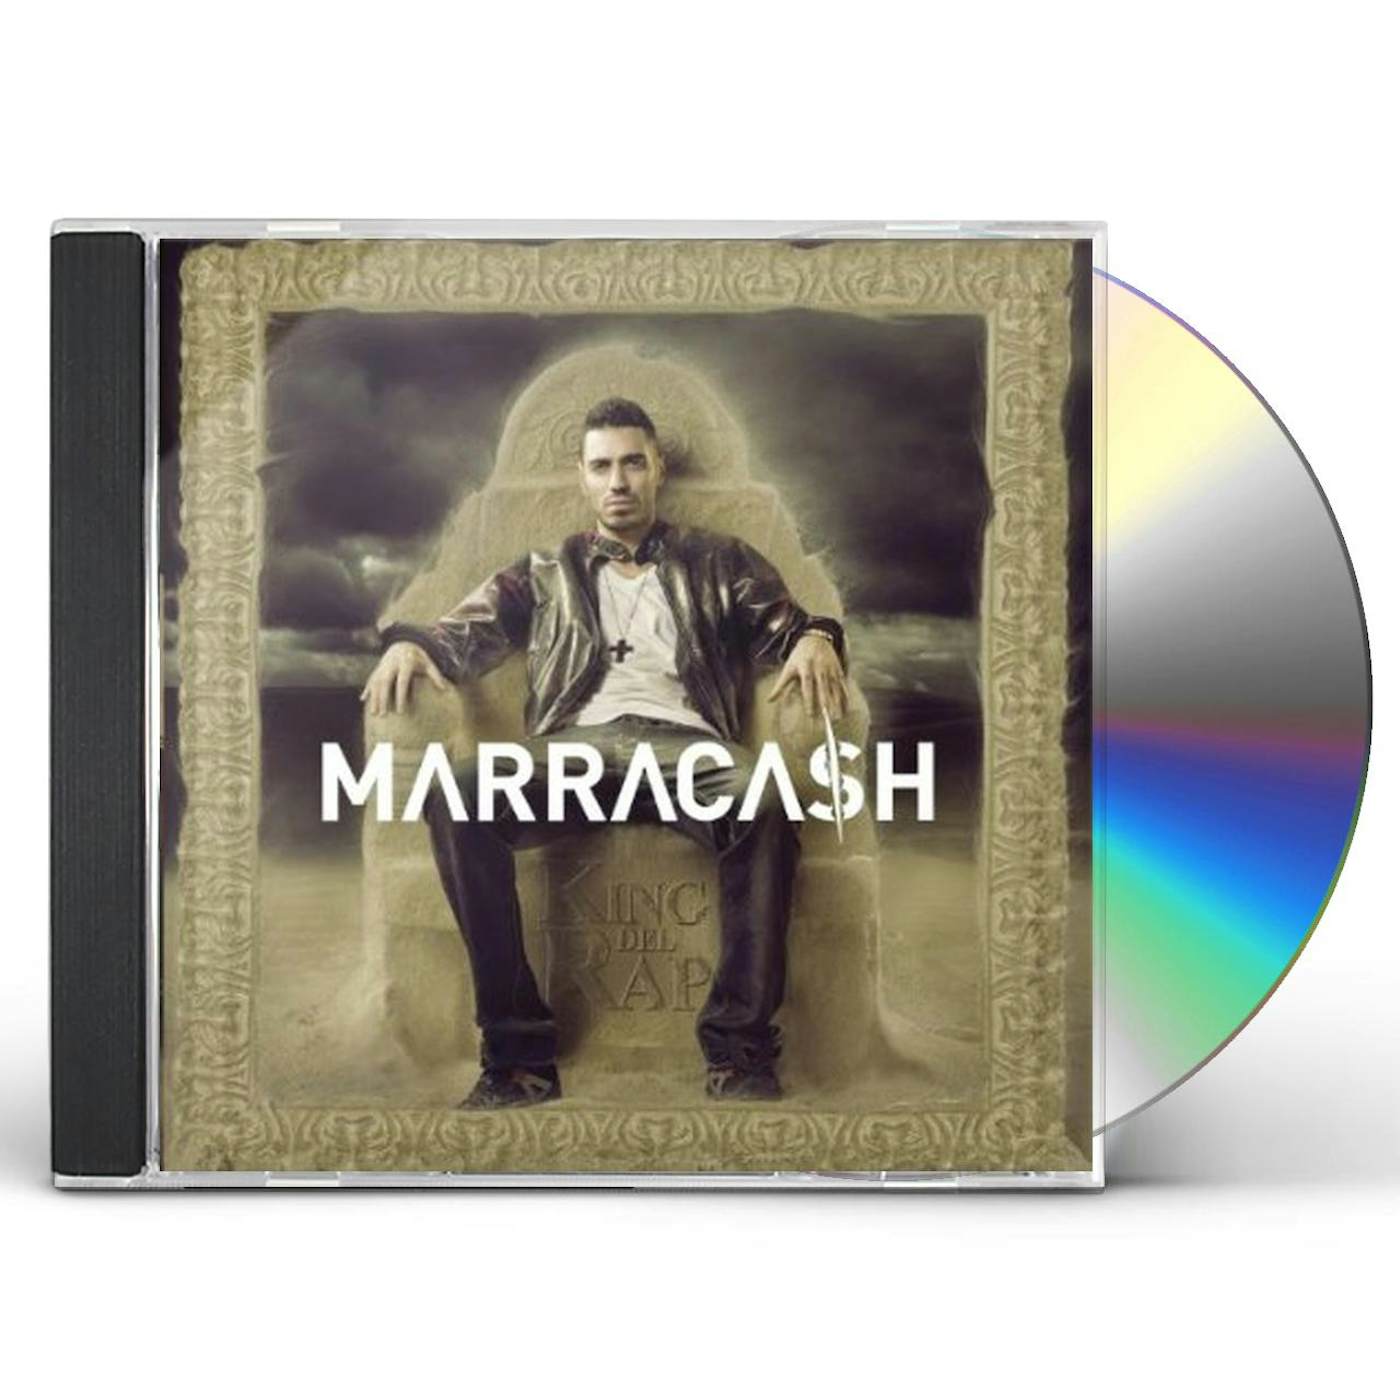 Marracash KING DEL RAP CD